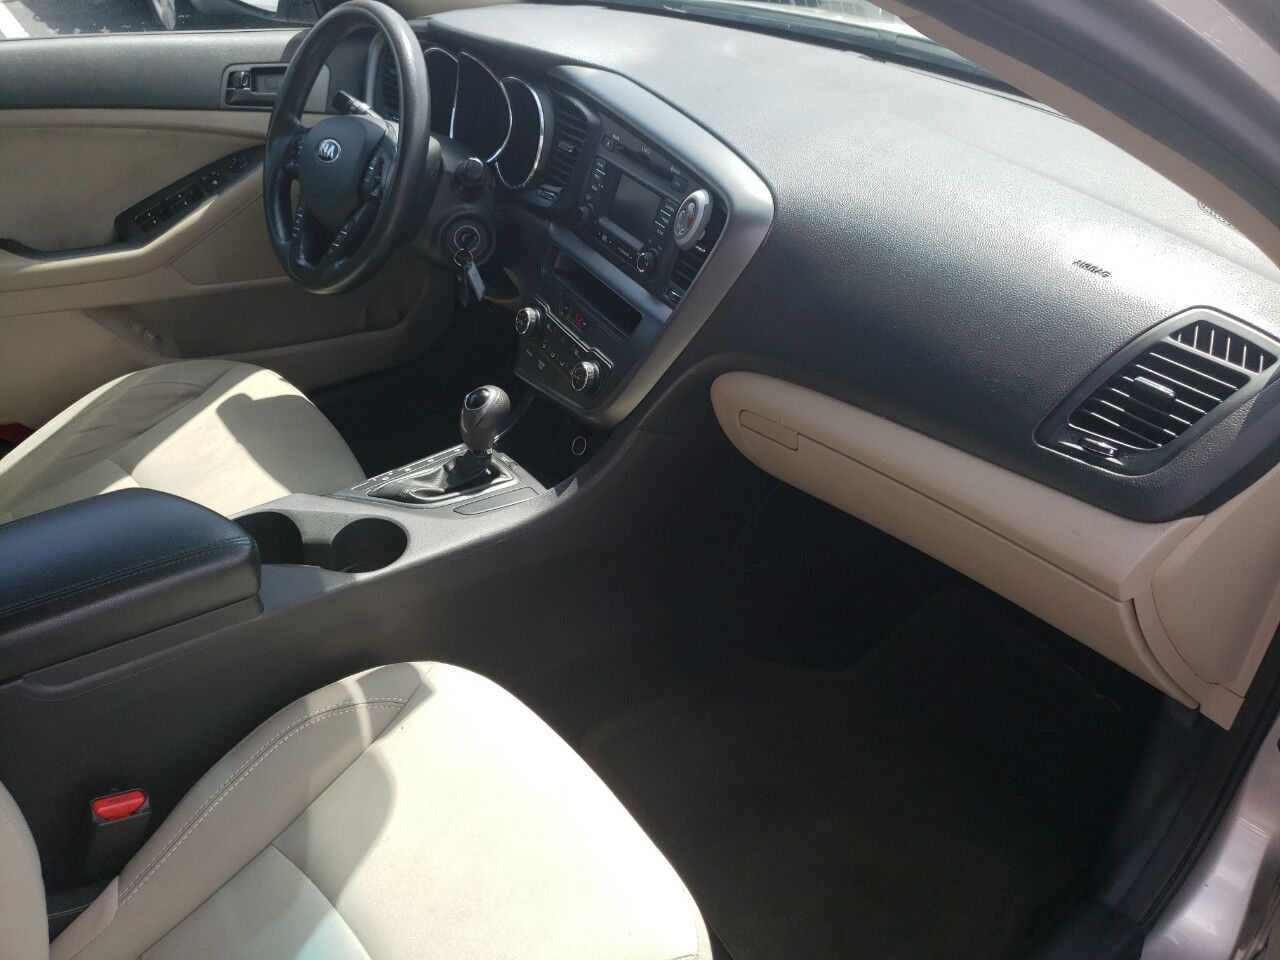 2013 KIA Optima Sedan - $7,995